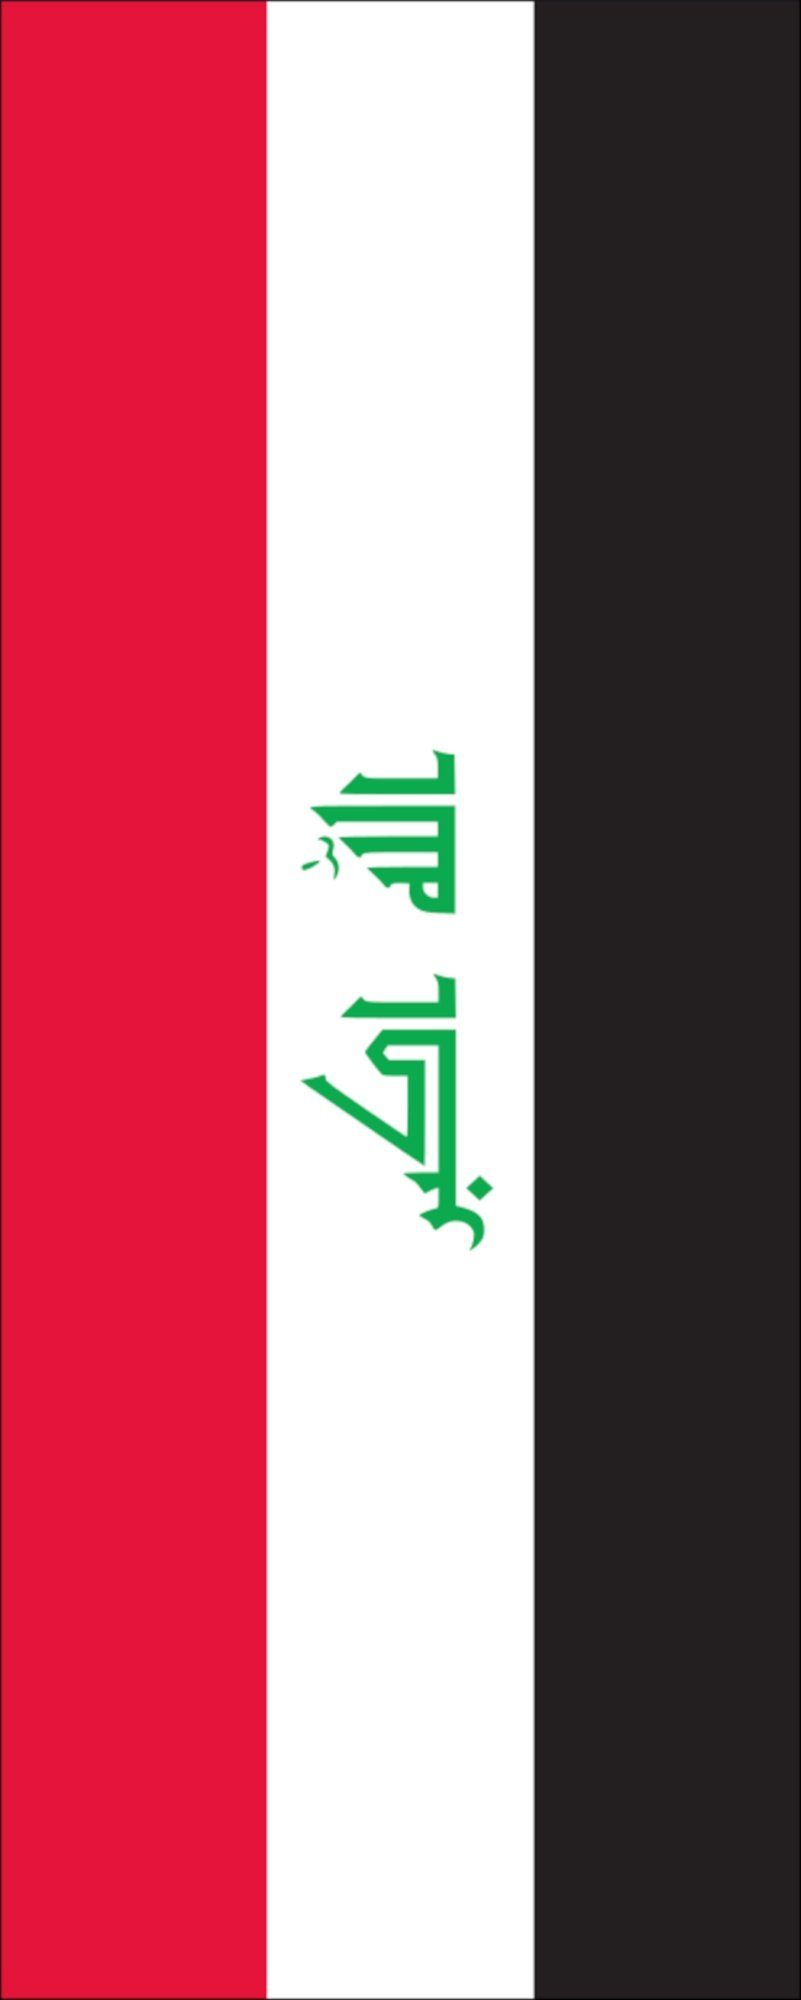 Flagge des irak  Kostenlose Foto